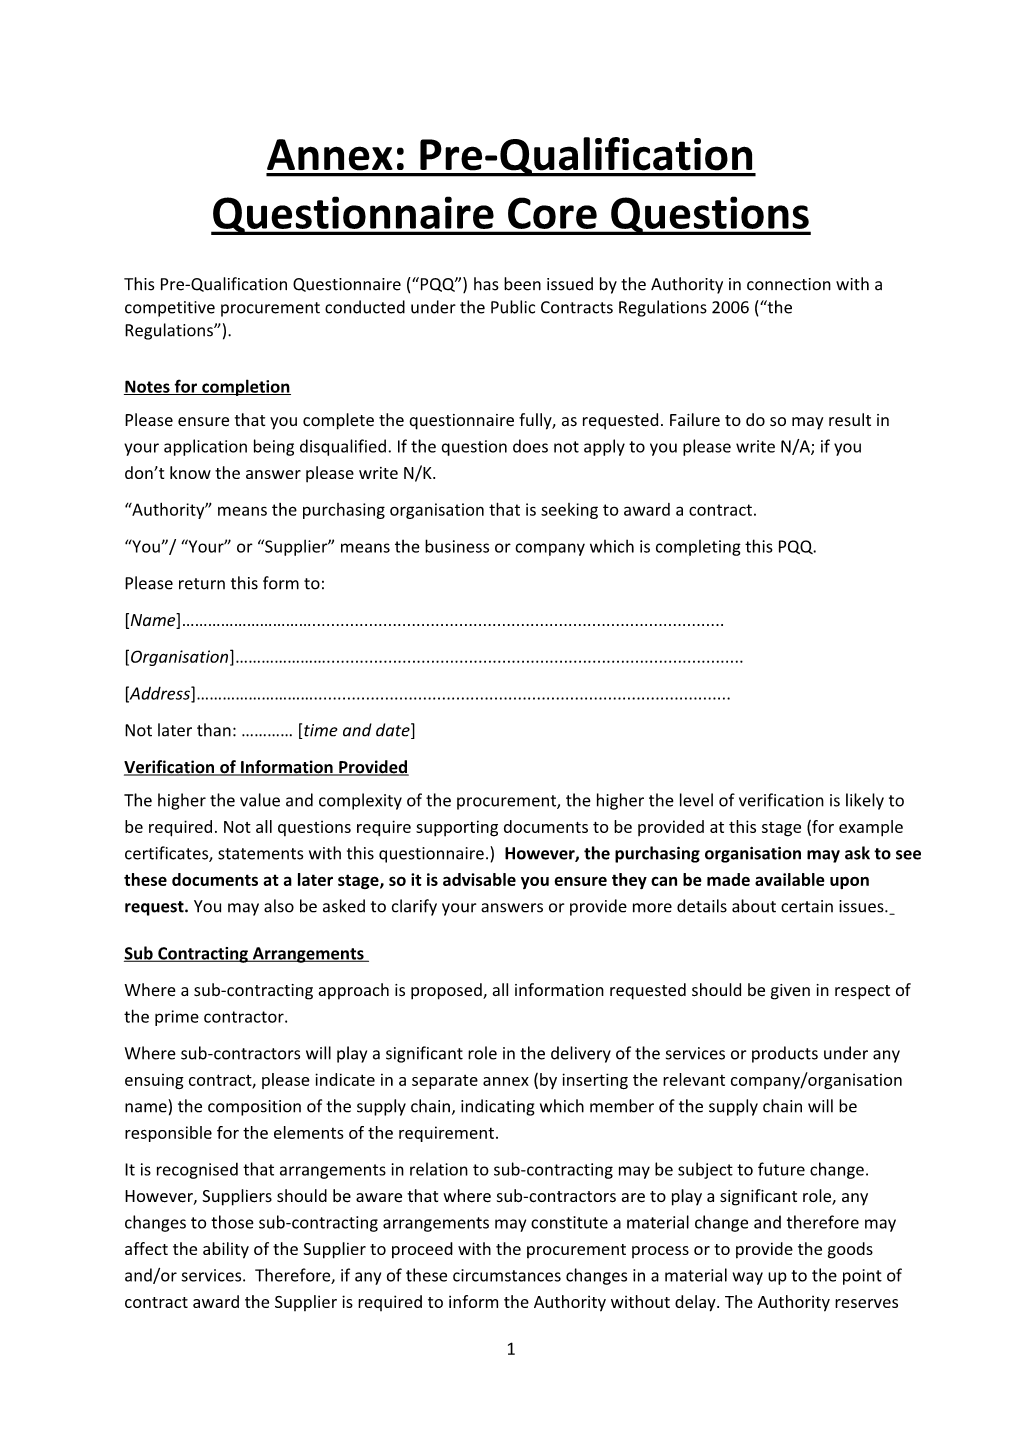 Annex:Pre-Qualification Questionnaire Core Questions